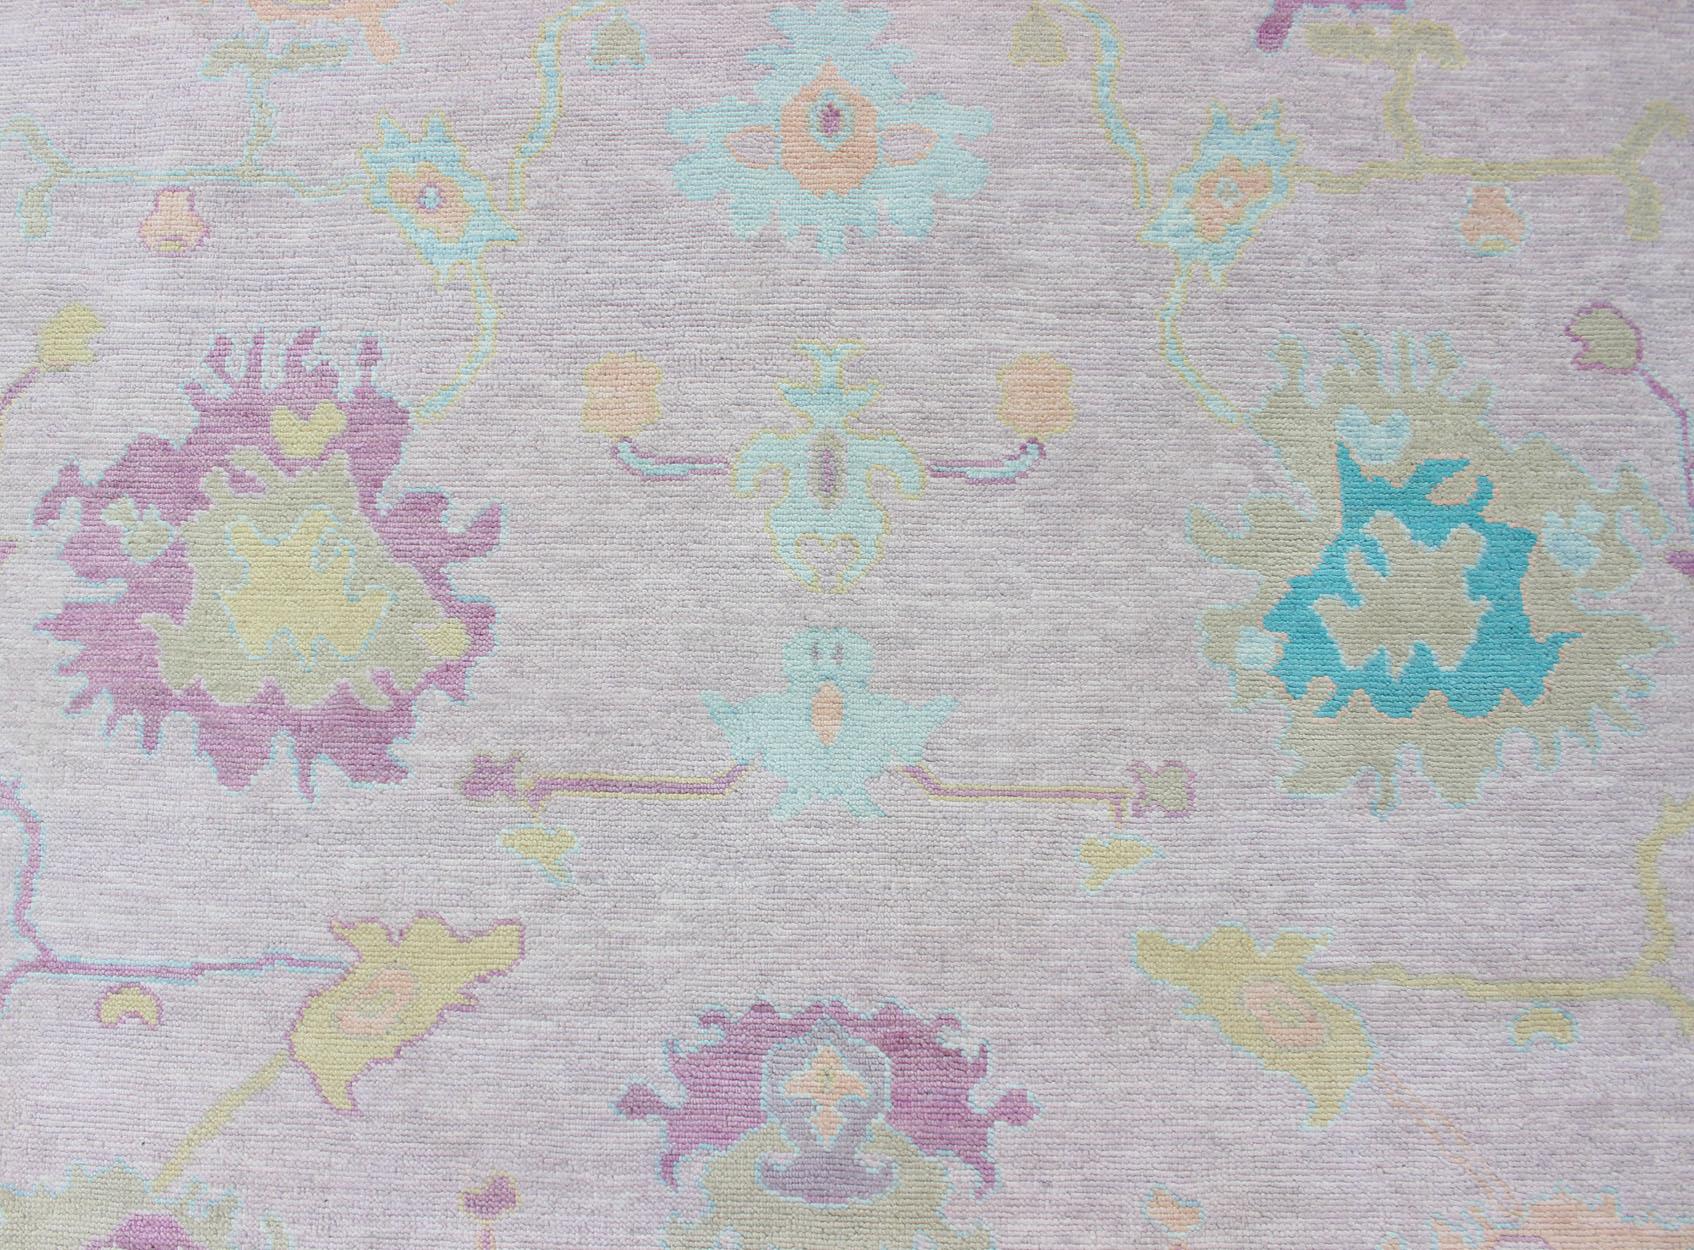 Tapis moderne en laine, Design/One, avec des bordures rose pâle et bleu glacier, par Keivan Woven Arts.
Mesure 9'5 x 12'1
Cette pièce fantasque a été nouée à la main en Inde dans les années 2010. Ce Design/One présente un motif floral classique,